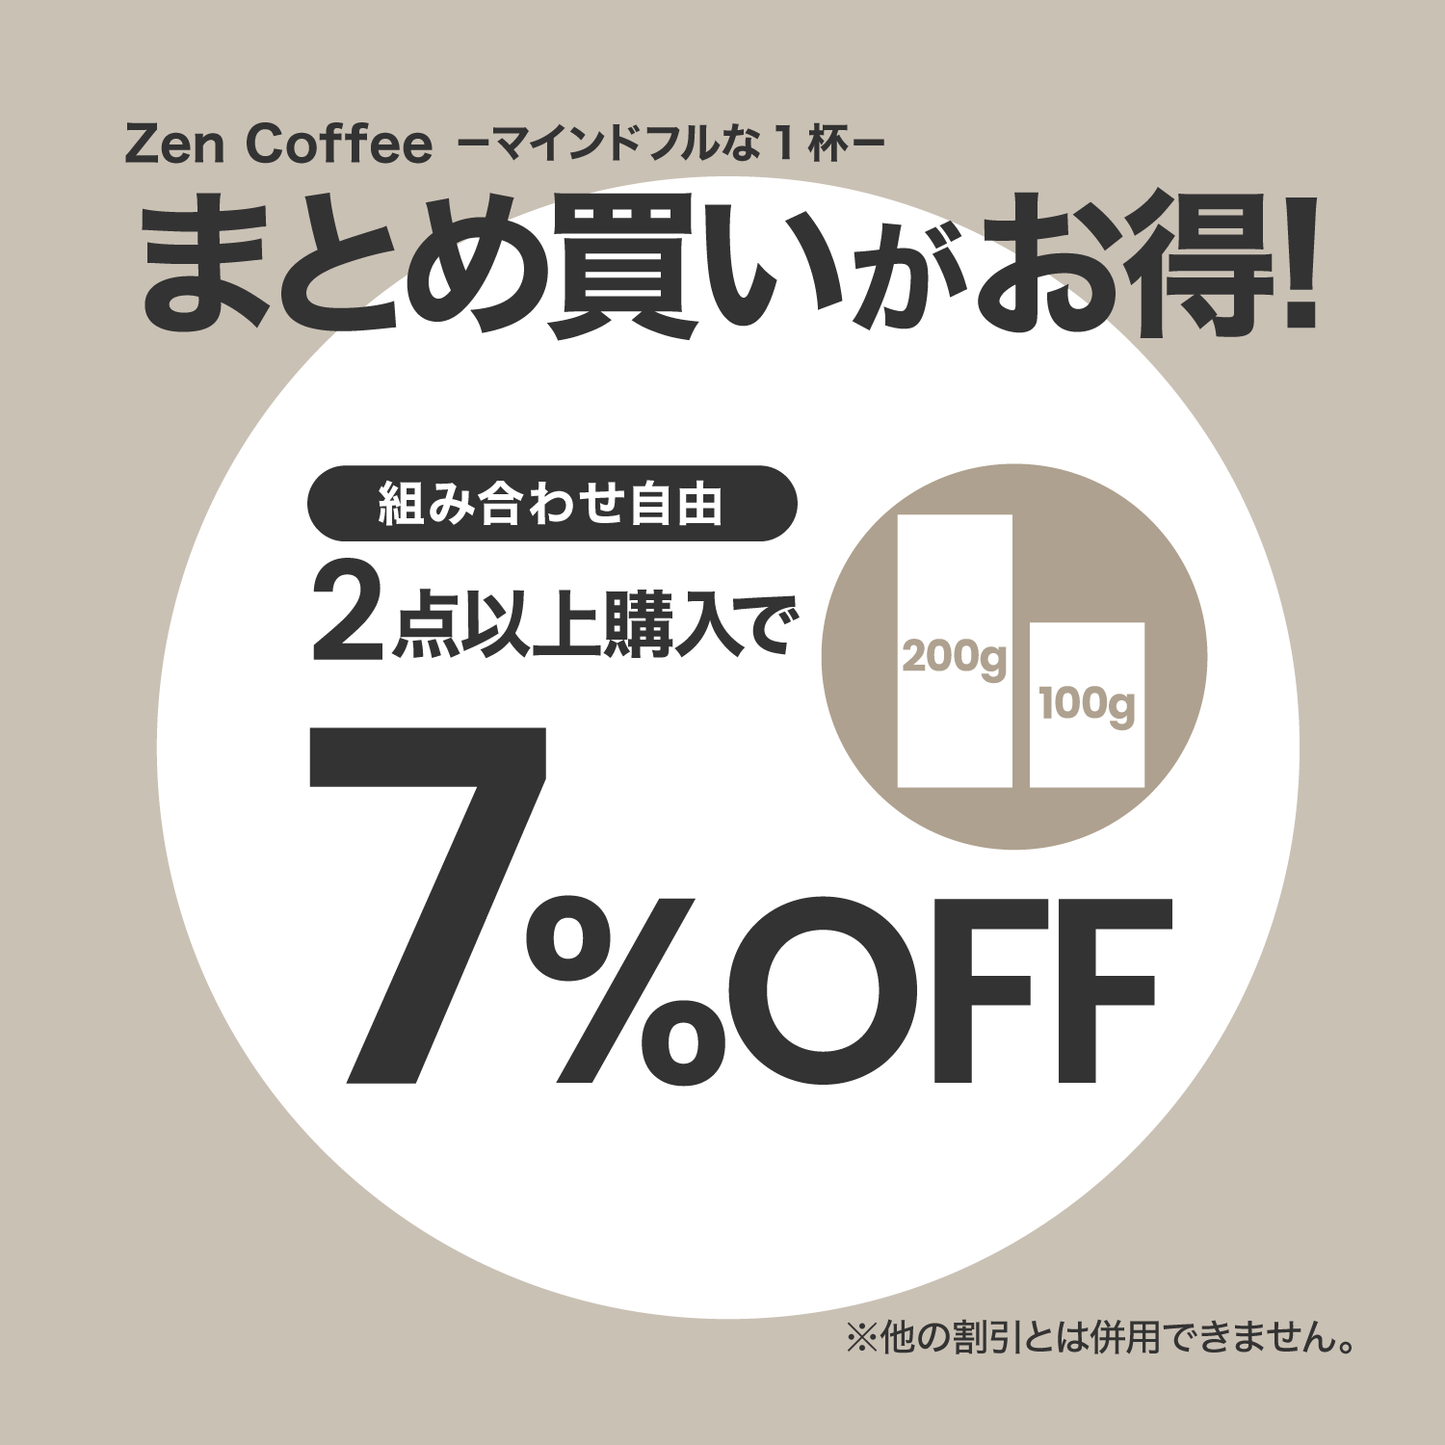 Midnight Zen Coffee